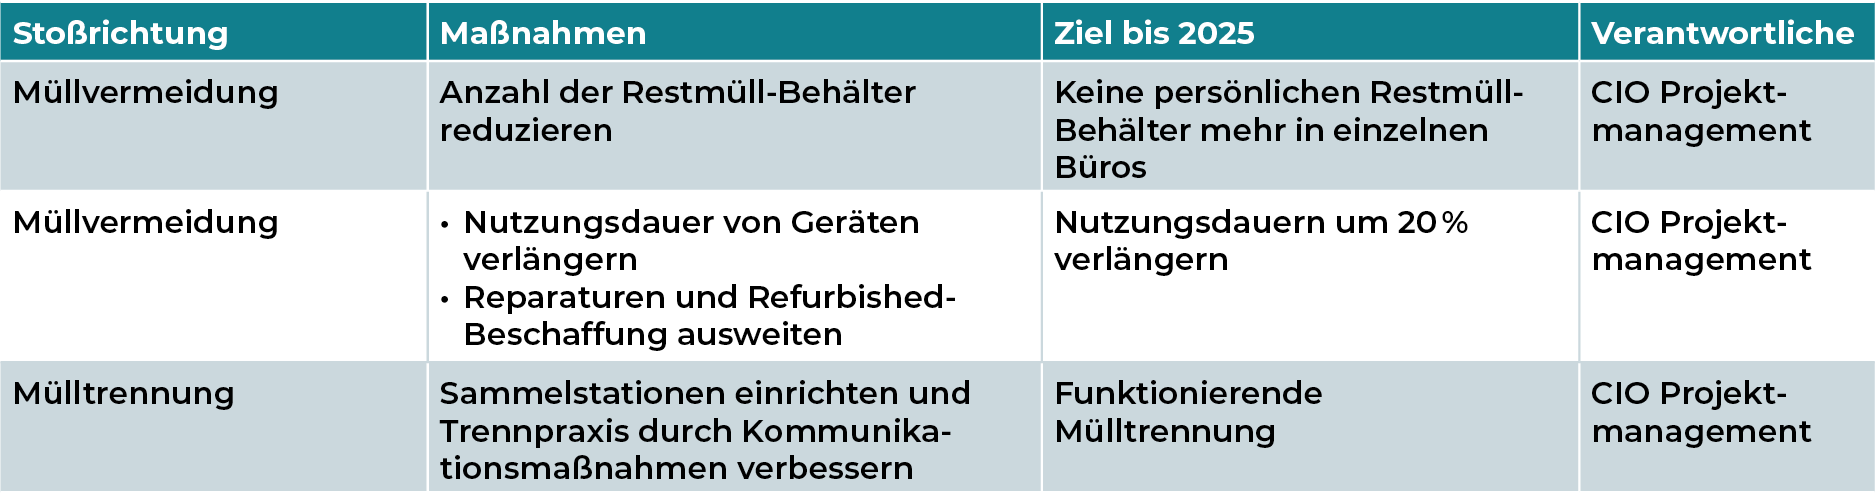 Mediengruppe Wiener Zeitung Nachhaltigkeitsbericht 2023 - mgwz_umwelt-abfallvermeidung-FE